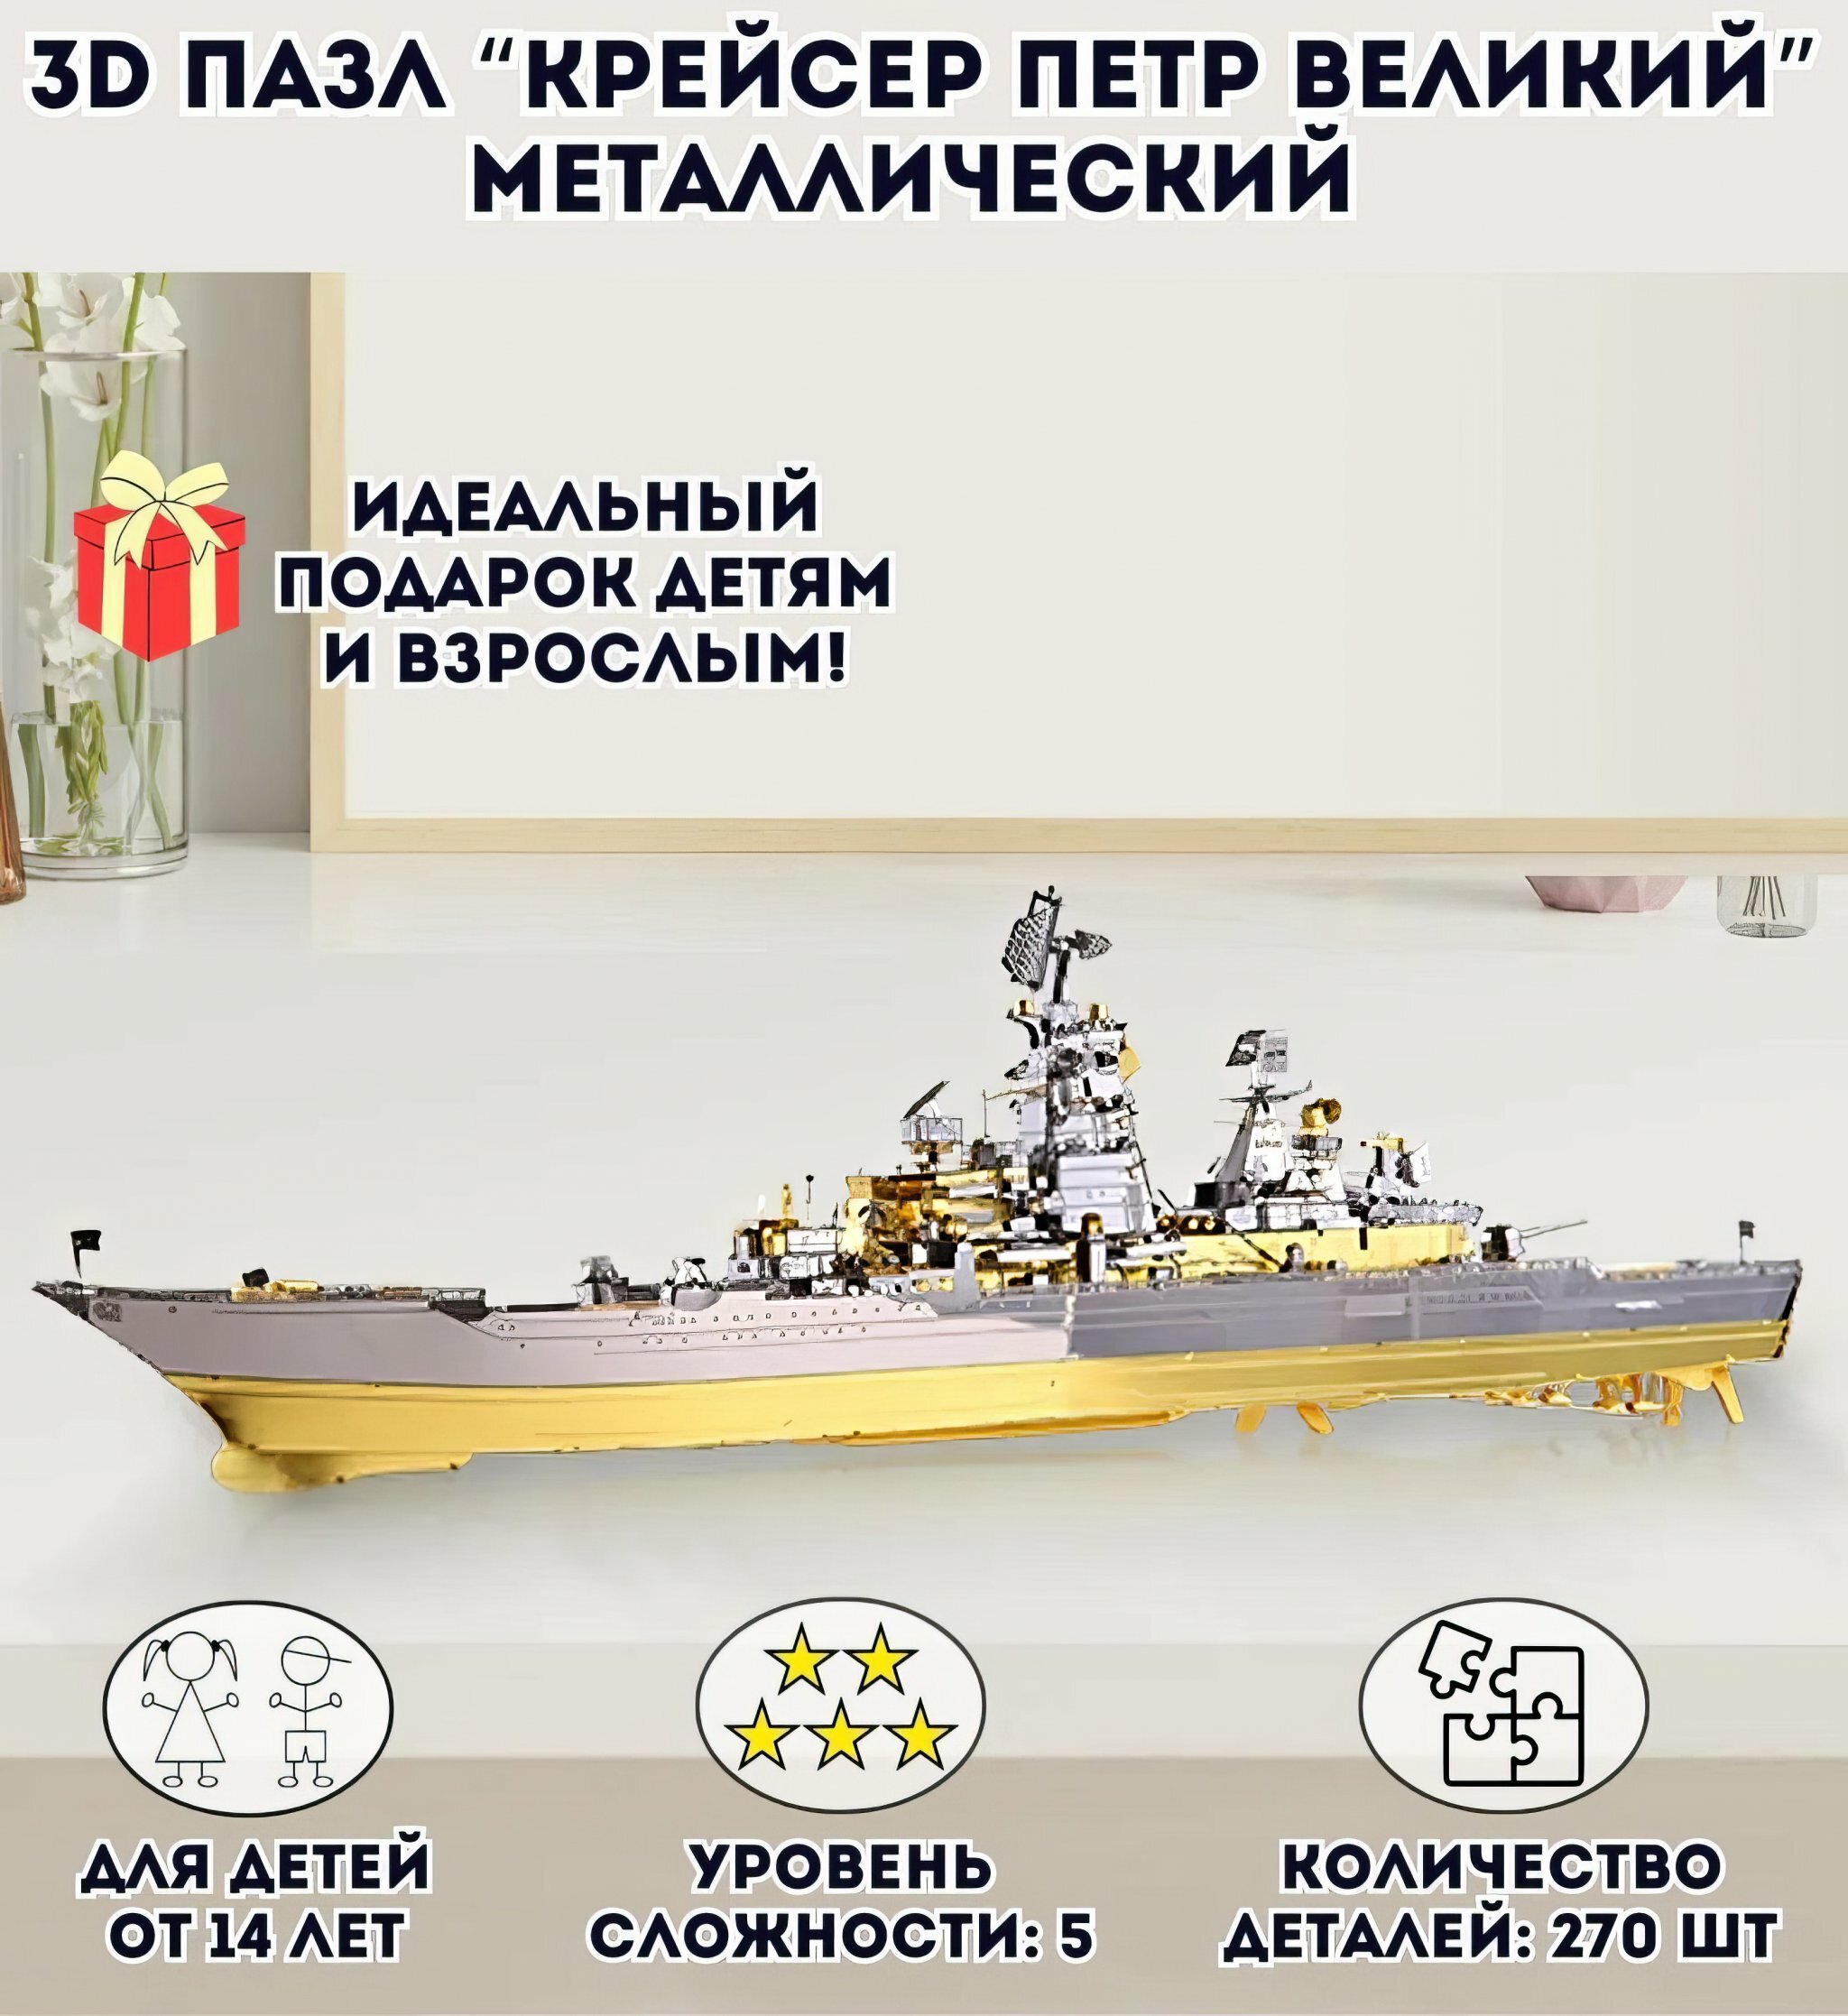 3D пазл металлический "Крейсер Пётр Великий" Luxury Gift сборная модель корабля